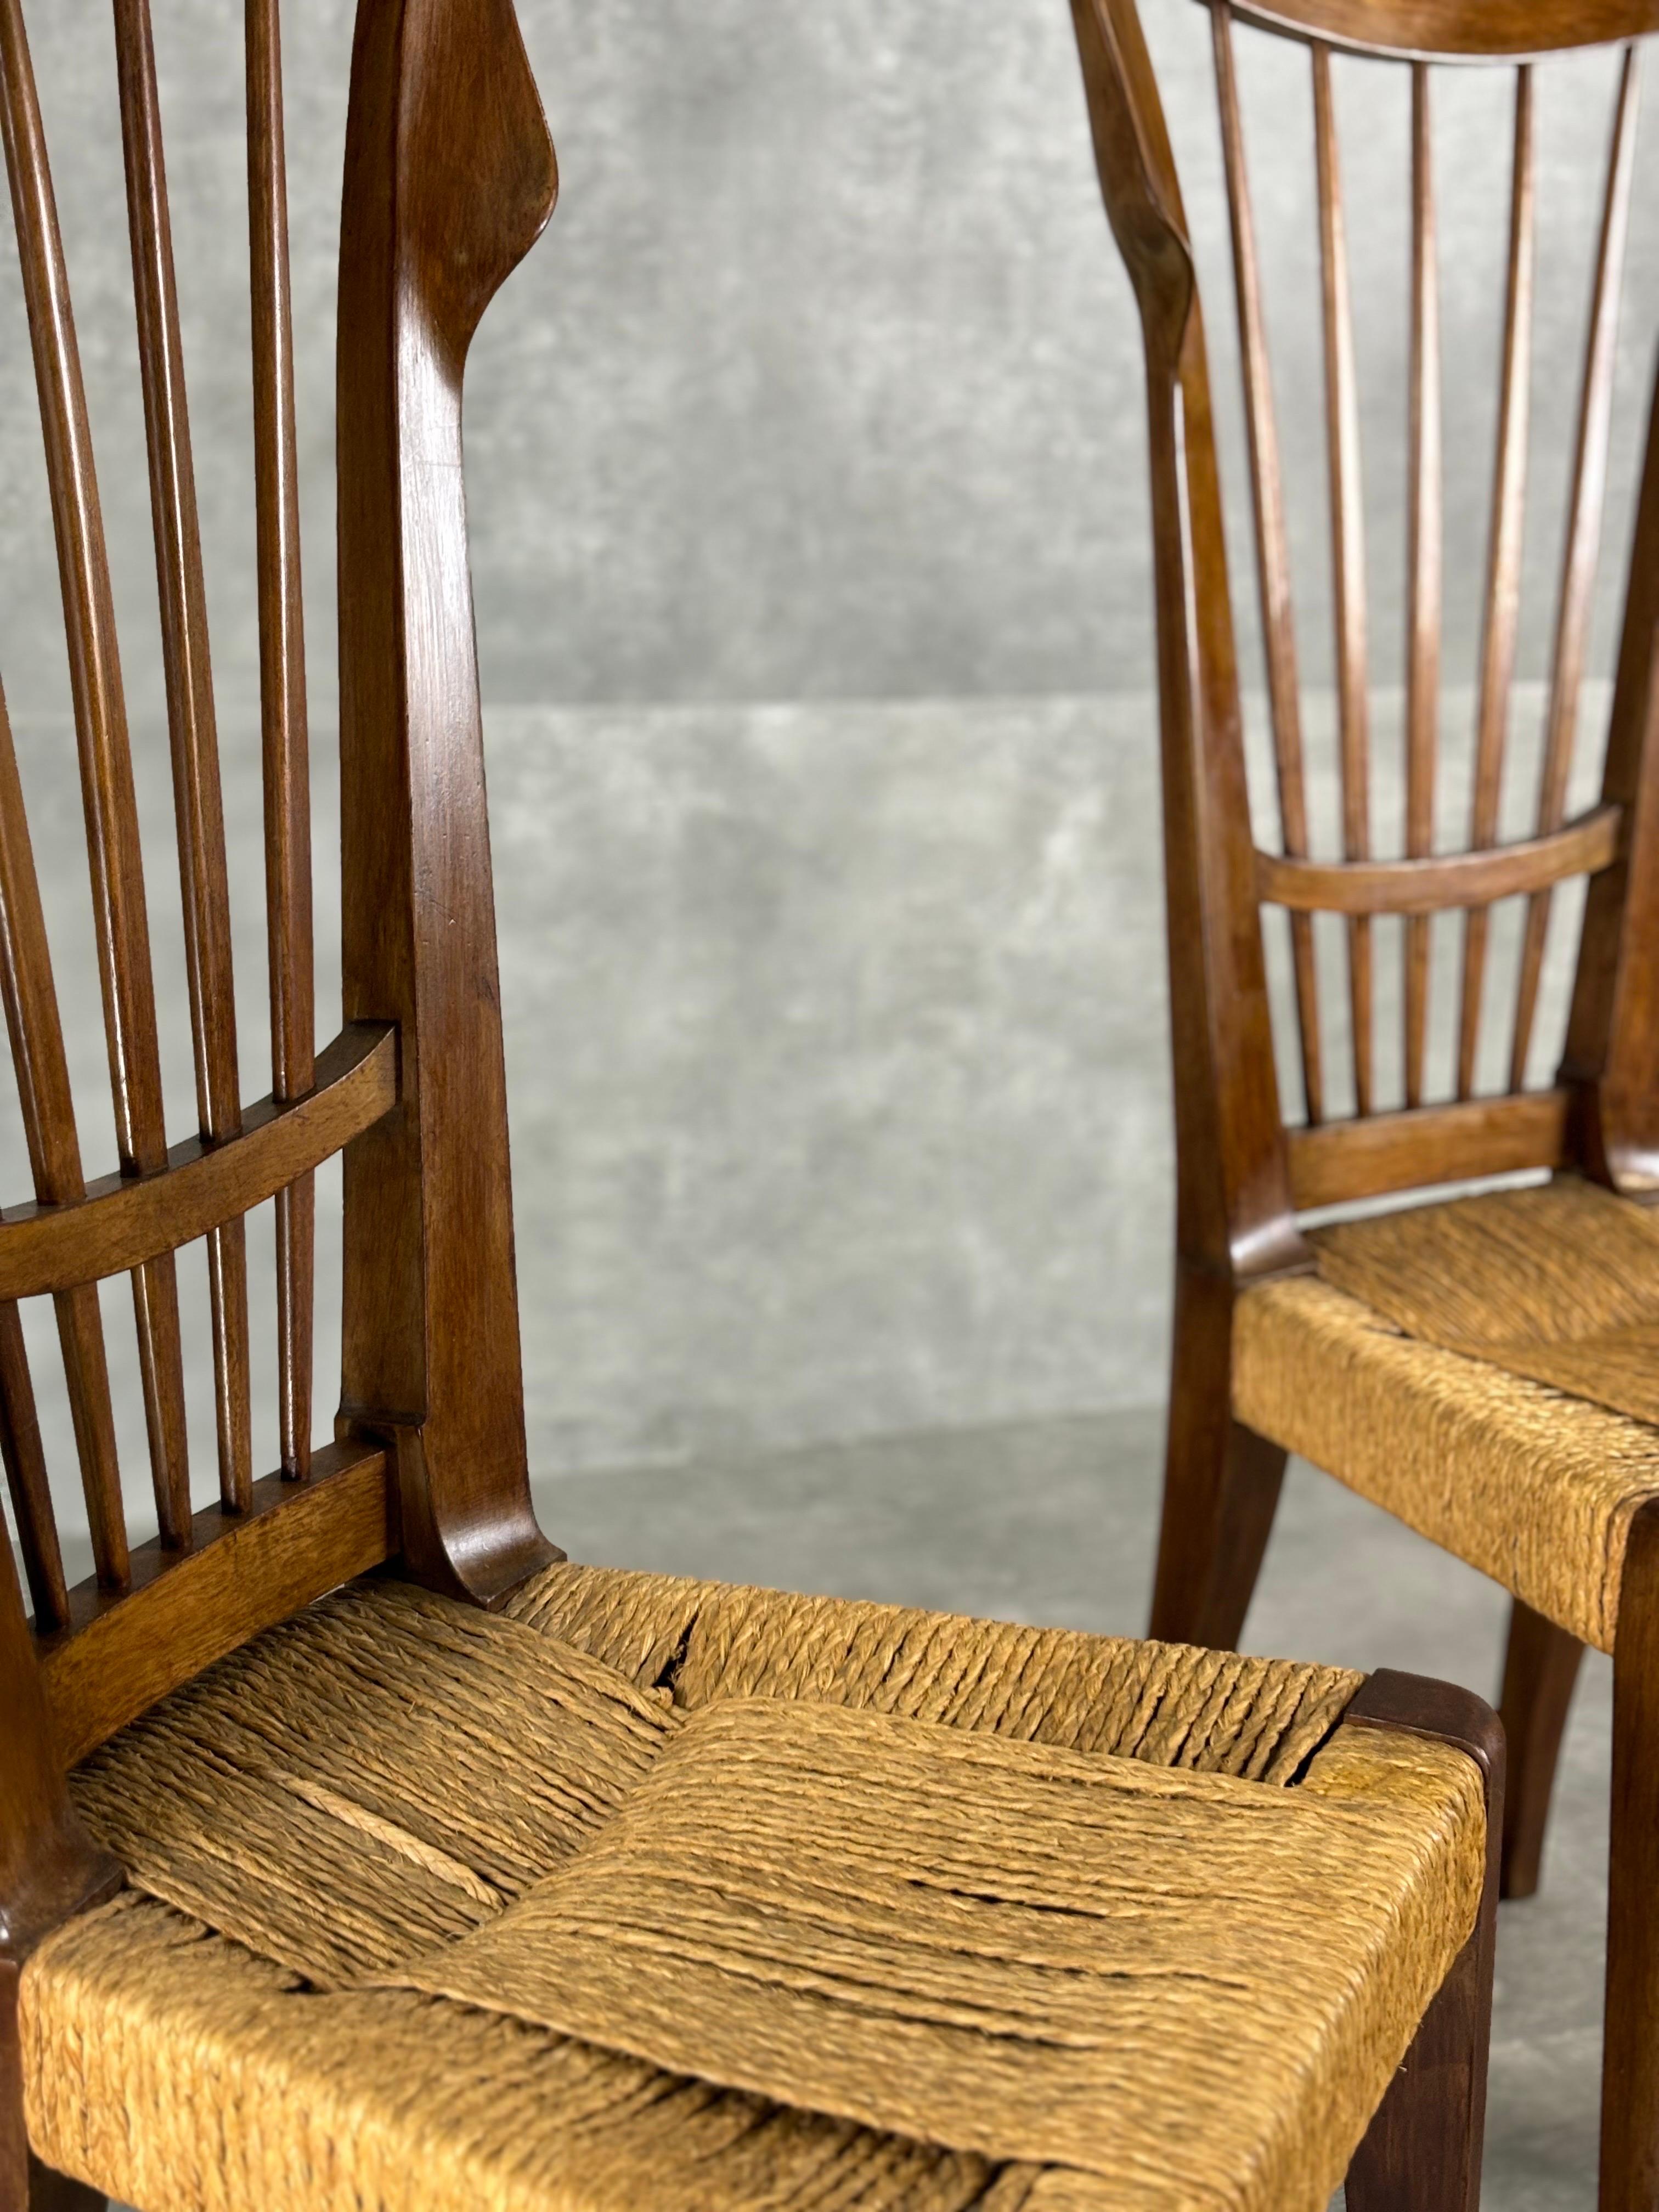 Ensemble de deux chaises conçues par Guglielmo Pecorini fabriquées en Italie dans les années 50 avec structure en bois et assise en paille.